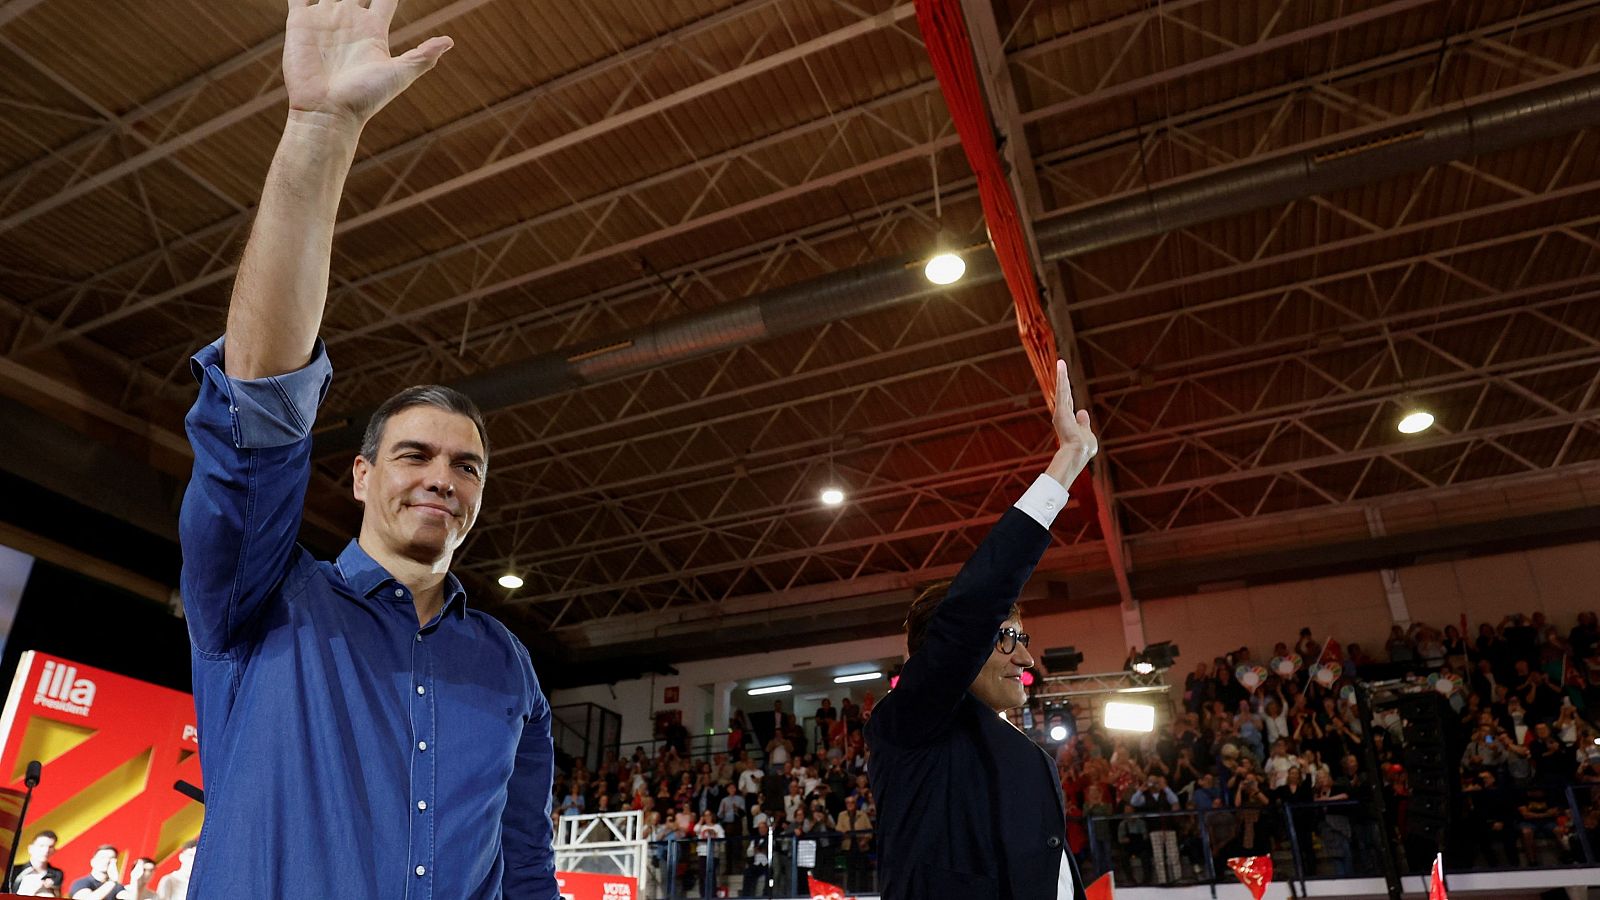 Pedro Sánchez i Salvador Illa saludant en el míting d'aquest dijous a Sant Boi de Llobregat